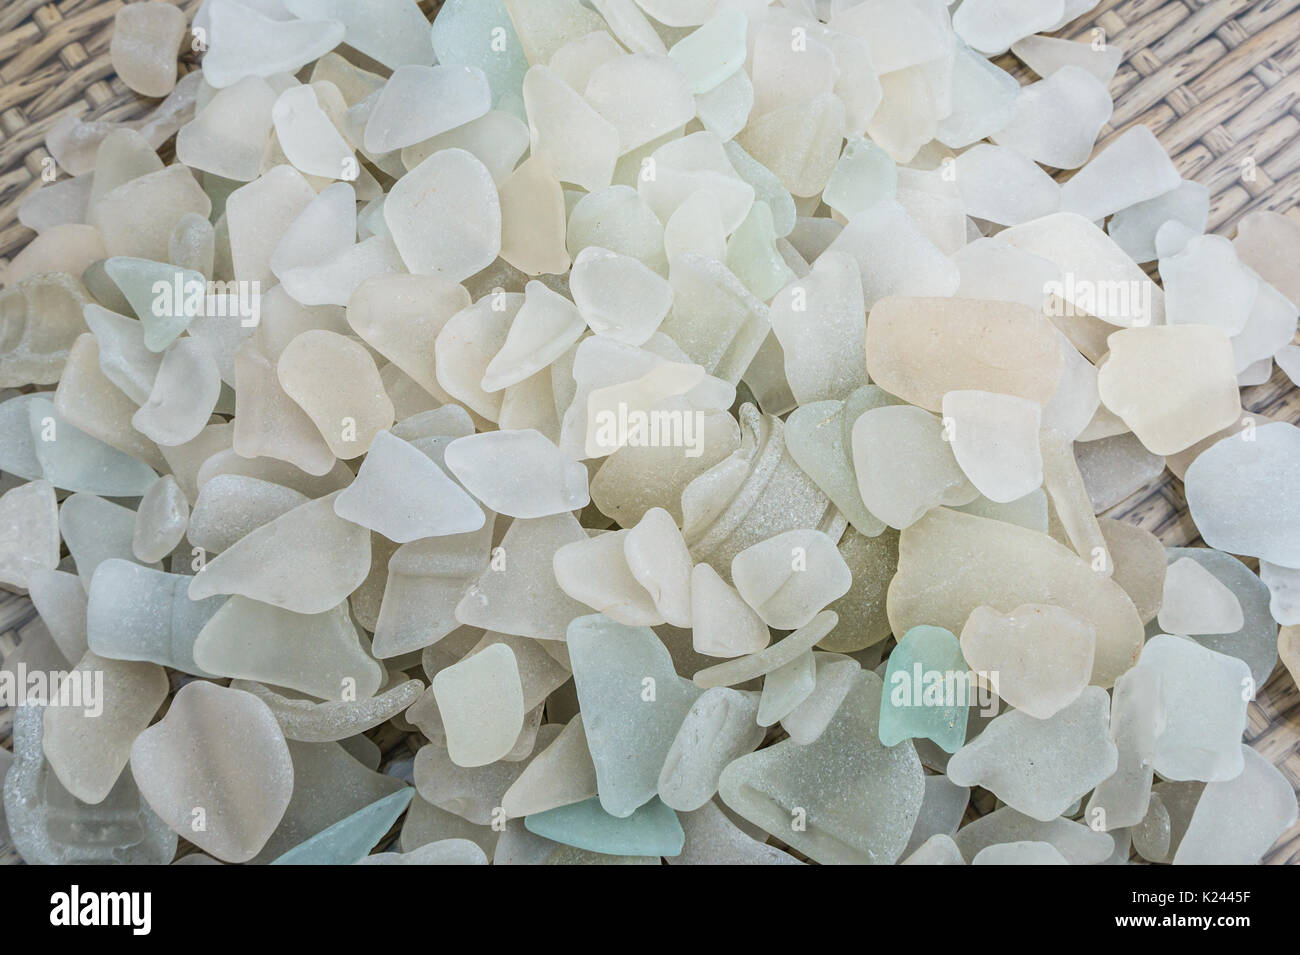 Close up of sea porté blanc et opaque sea glass collection. Des morceaux de verre provenant de la mer plages écossaises, Ecosse, Royaume-Uni Banque D'Images